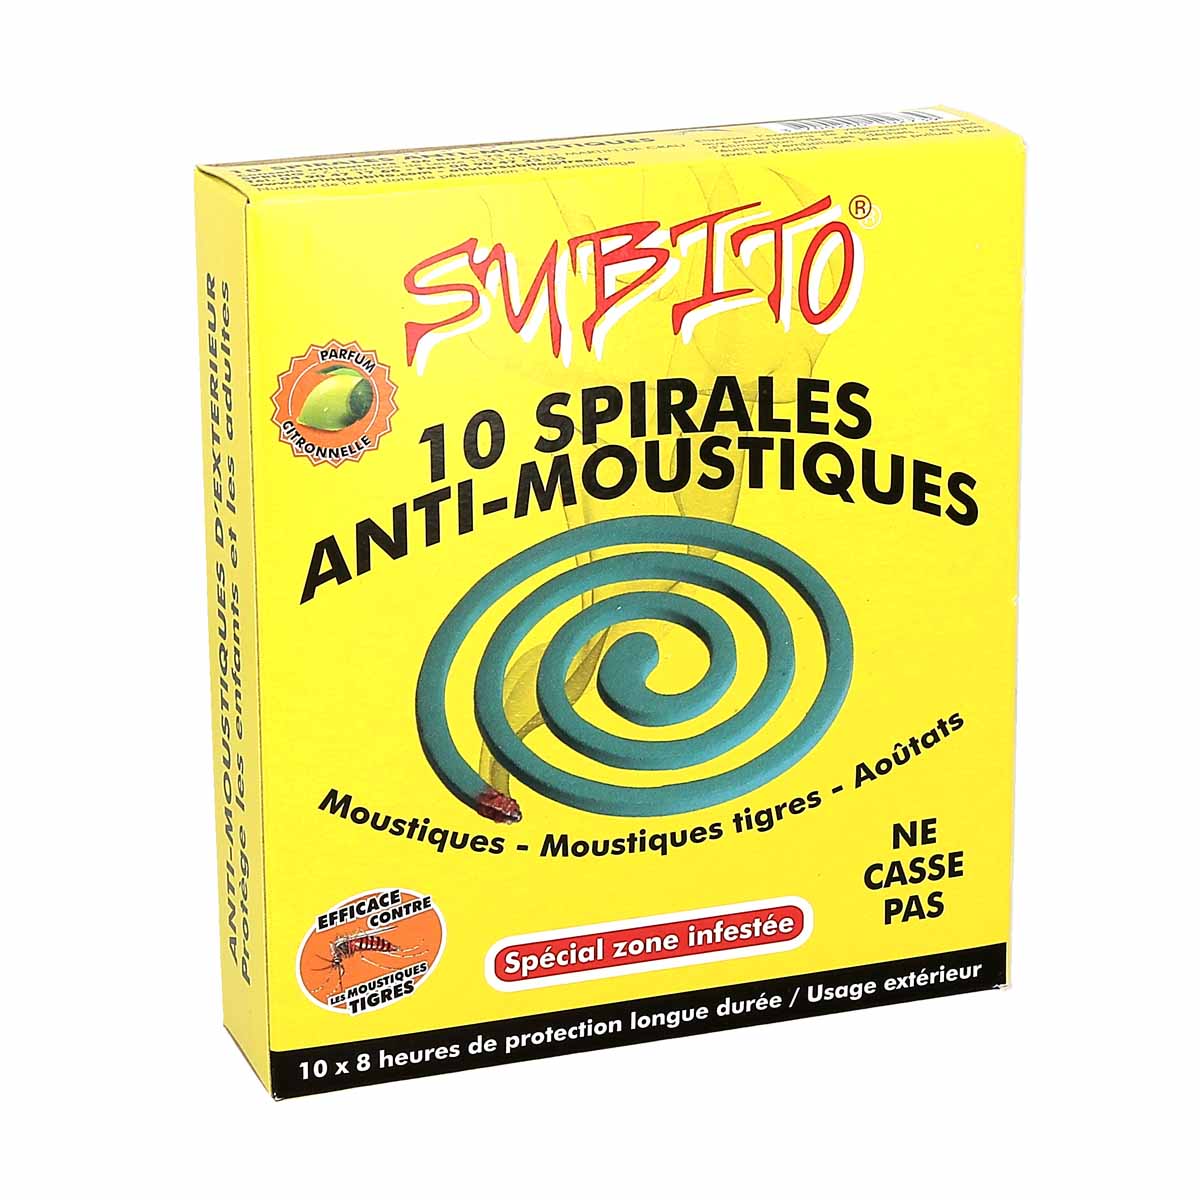 Subito Spirales Anti-Moustiques Spécial Zone Infestée, boite de 10 spirales